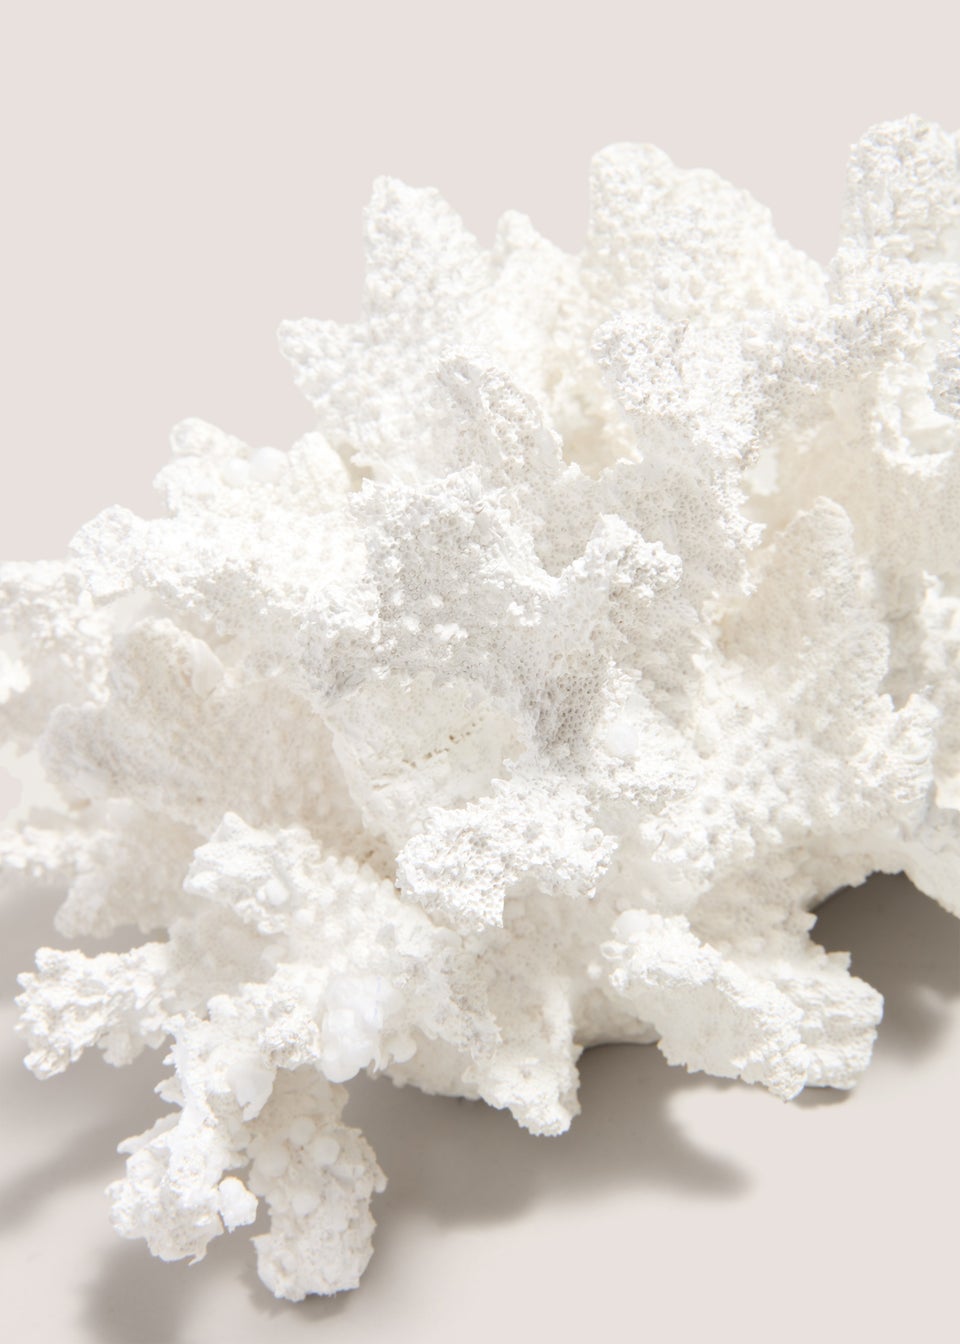 White Coral Ornament (15cm x 19.5cm x 27.9cm)